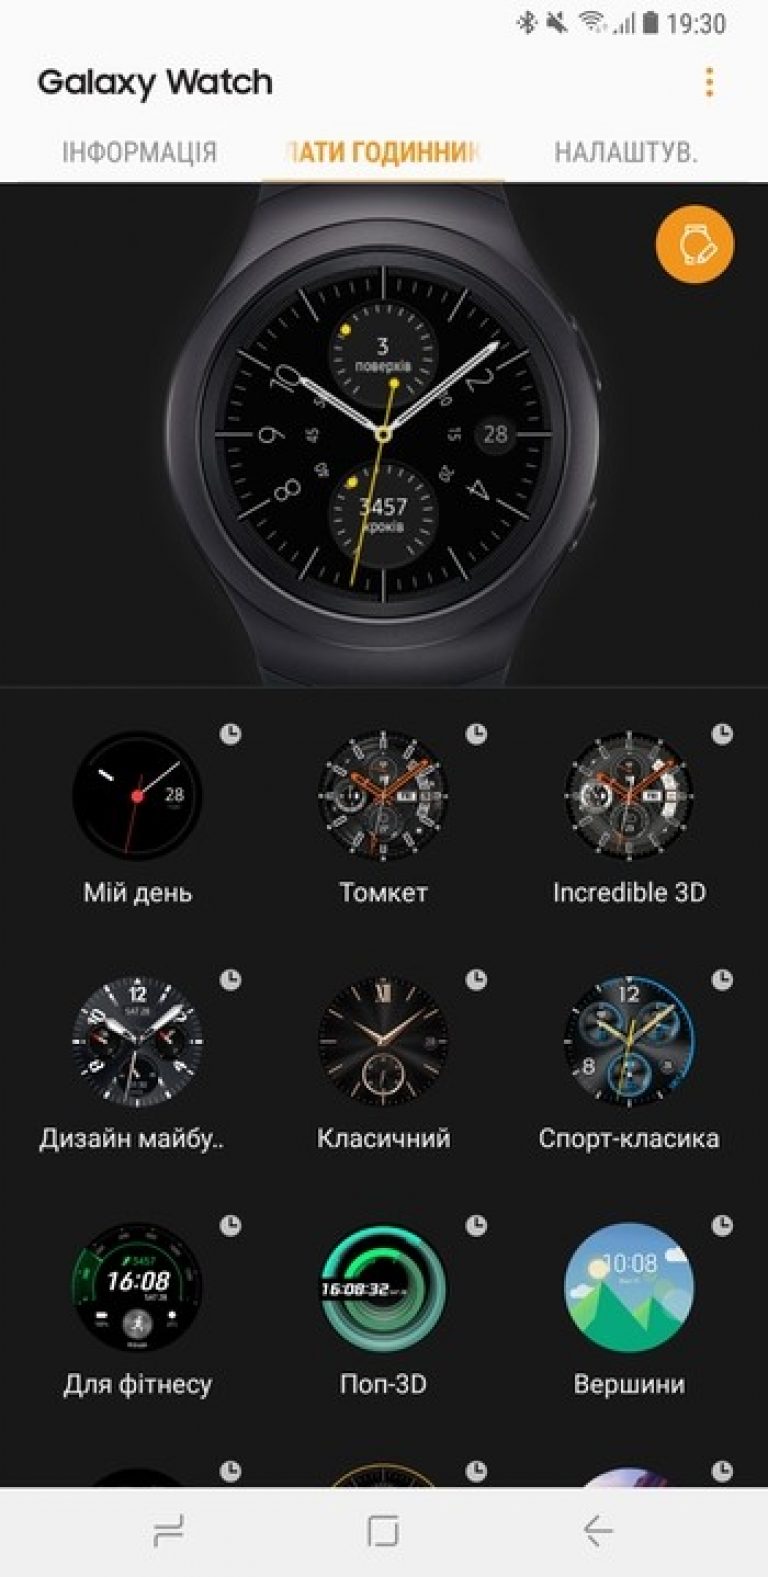 Программа для galaxy watch. Галакси часы самсунг 4 приложения. Циферблаты самсунг вотч. Циферблаты для галакси вотч. Часы самсунг вотч с приложениями.